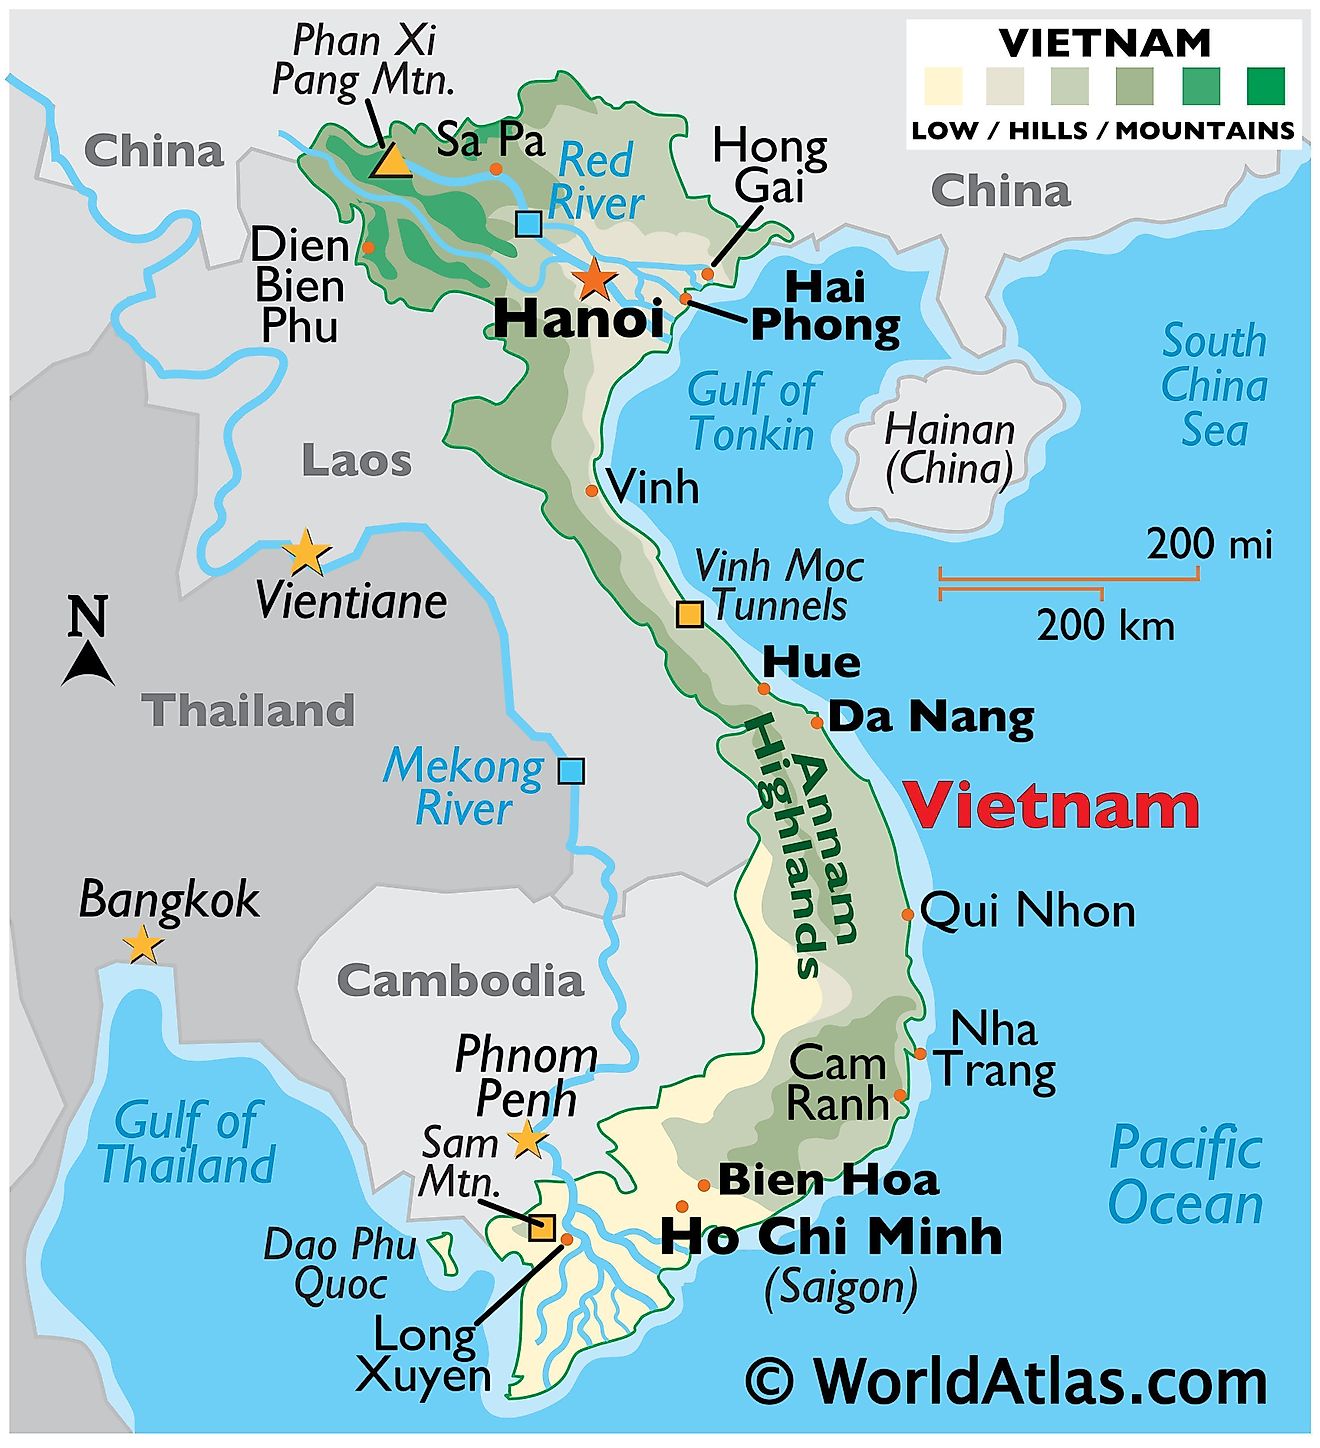 Mapa físico de Vietnam con límites estatales, ríos principales, áreas montañosas, pico más alto, ciudades importantes y más.